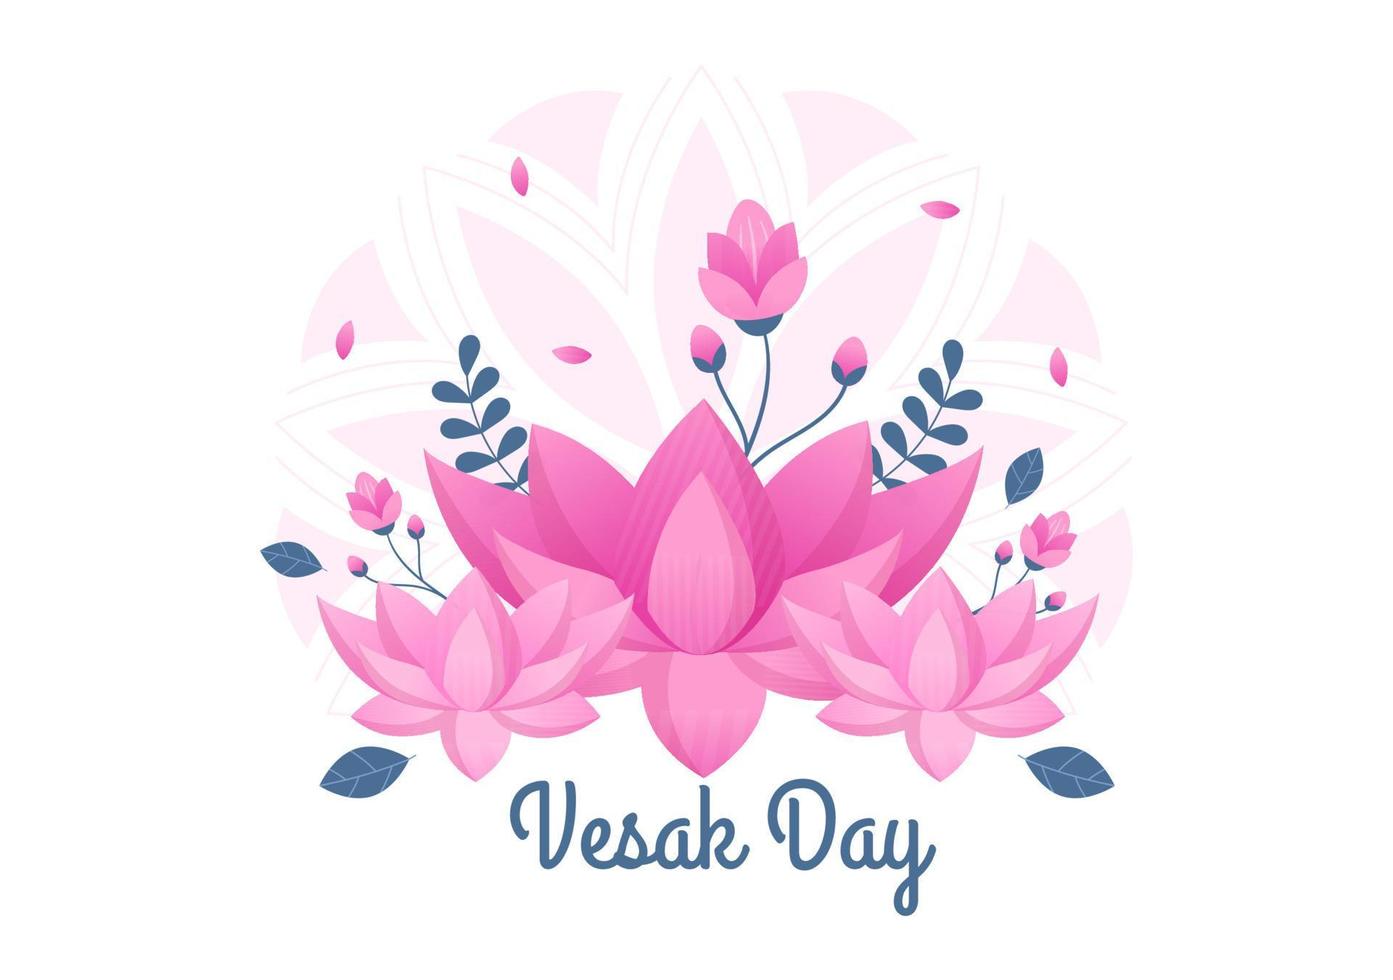 vesak-tagesfeier mit tempelsilhouette, laterne oder lotusblumendekoration in flacher karikaturhintergrundillustration für grußkarte oder poster vektor